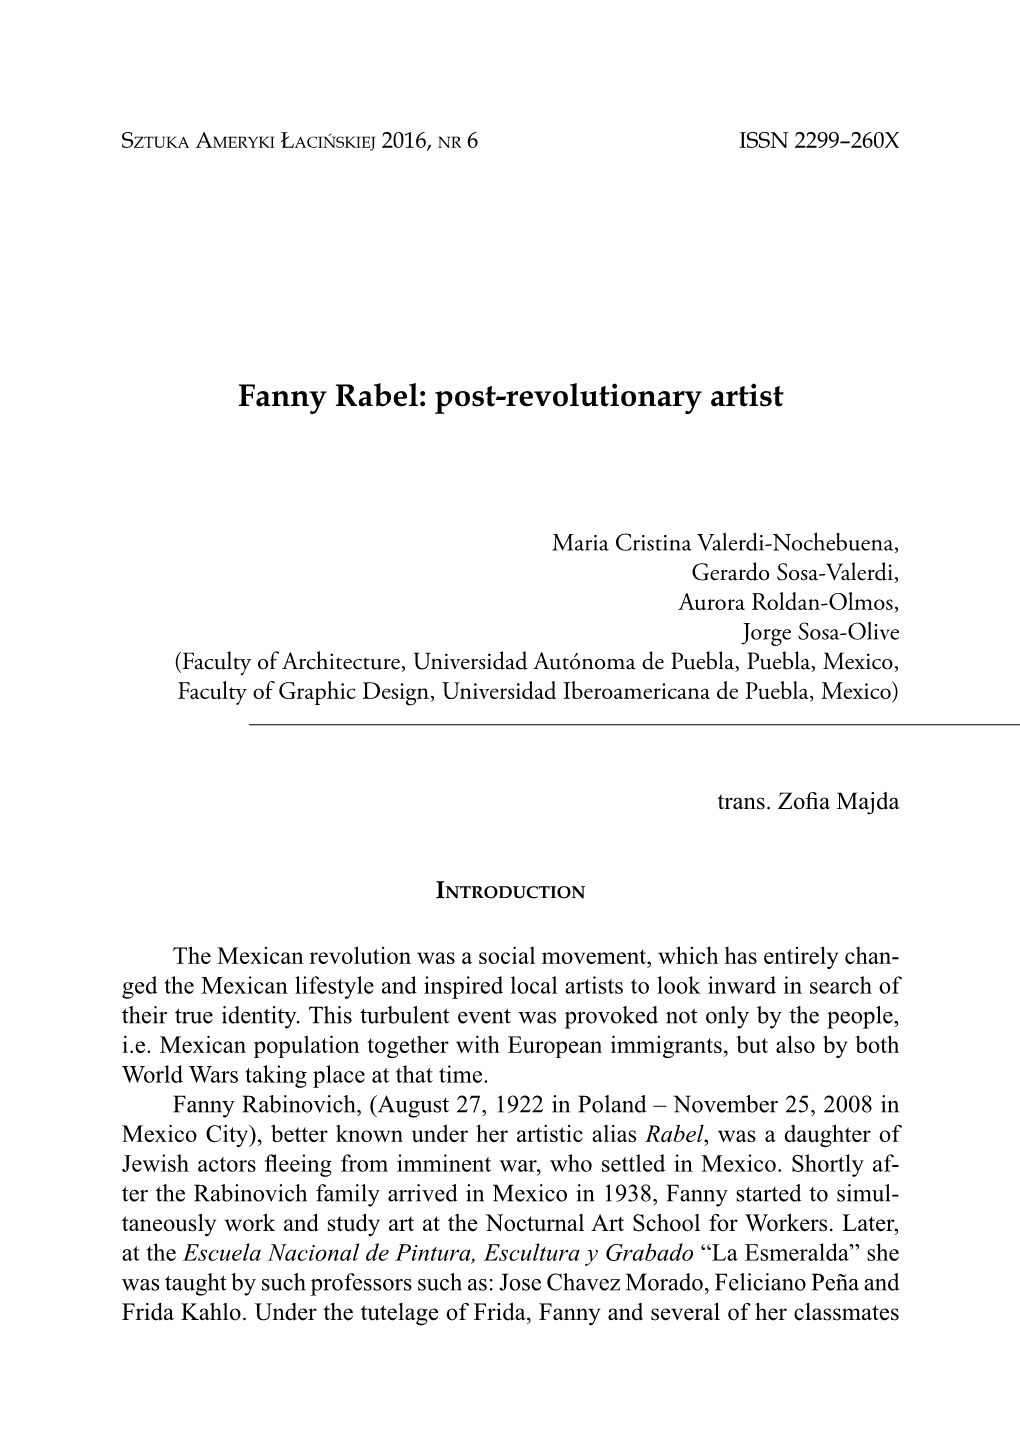 Fanny Rabel: Post-Revolutionary Artist